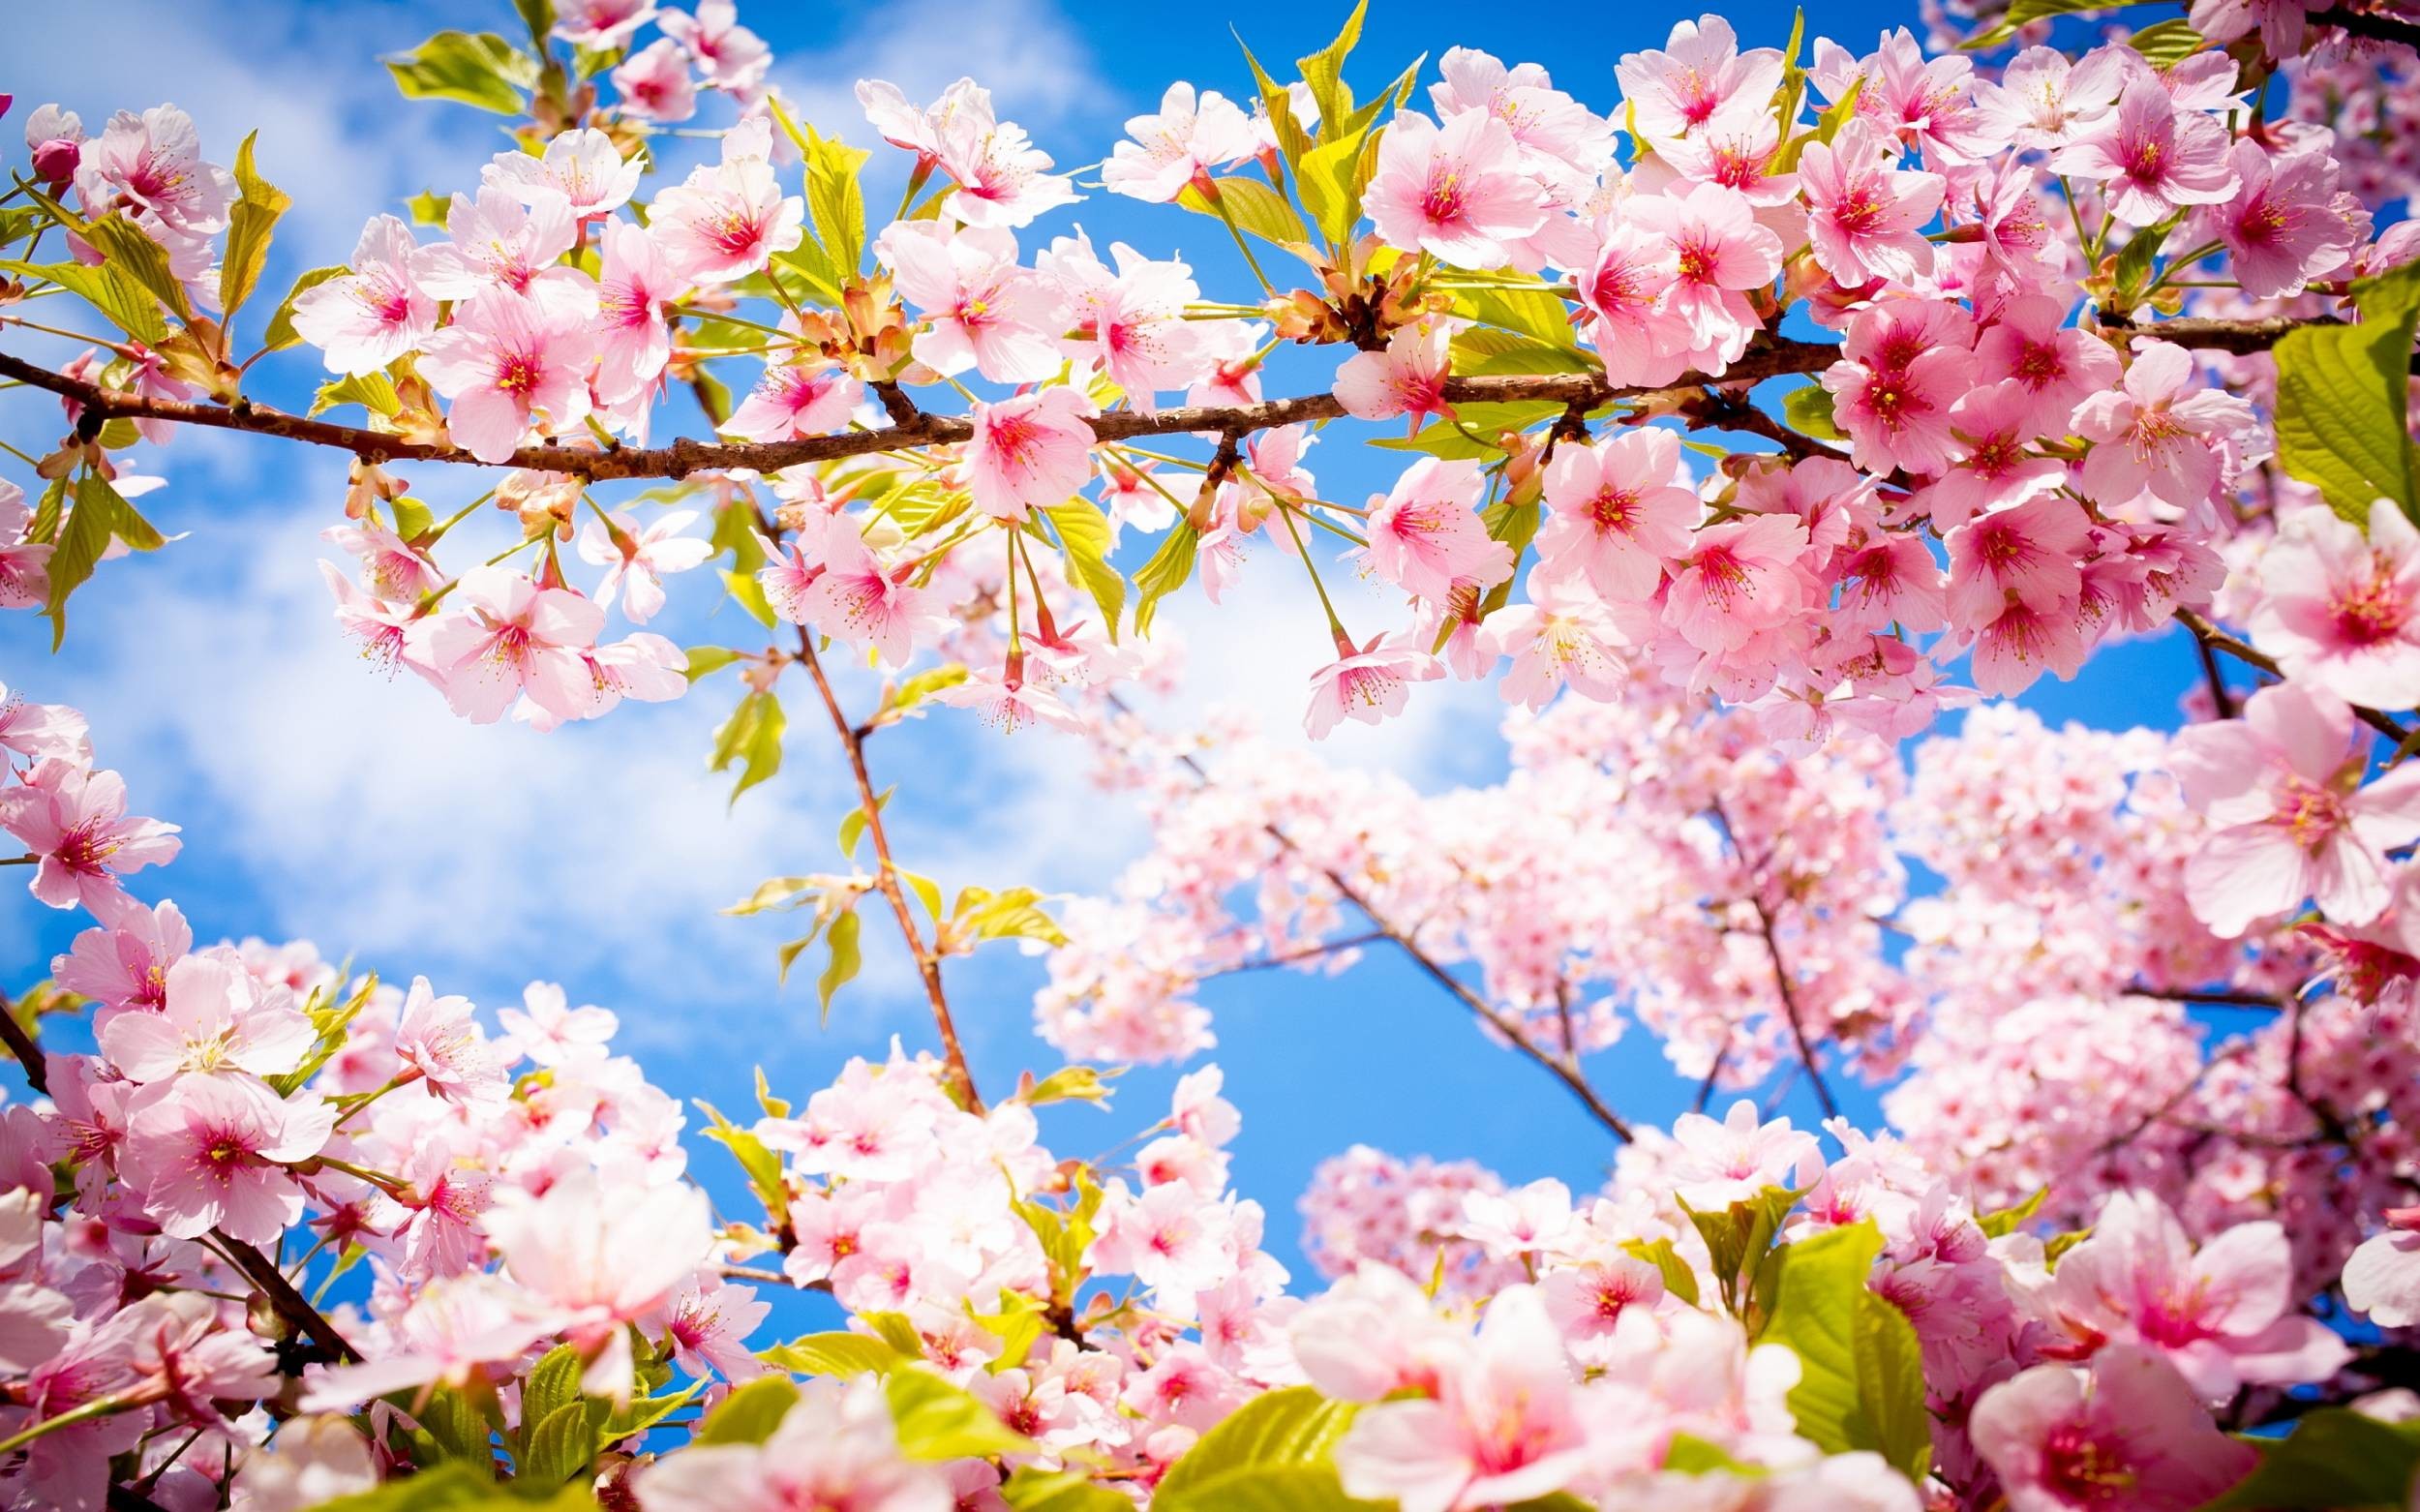 Những bài thơ của một lứa tuổi mới như chùm hoa thơm ngát rực rỡ trên cánh đồng xanh. Hãy khám phá những bài thơ tuyệt vời về mùa xuân thông qua hình ảnh!